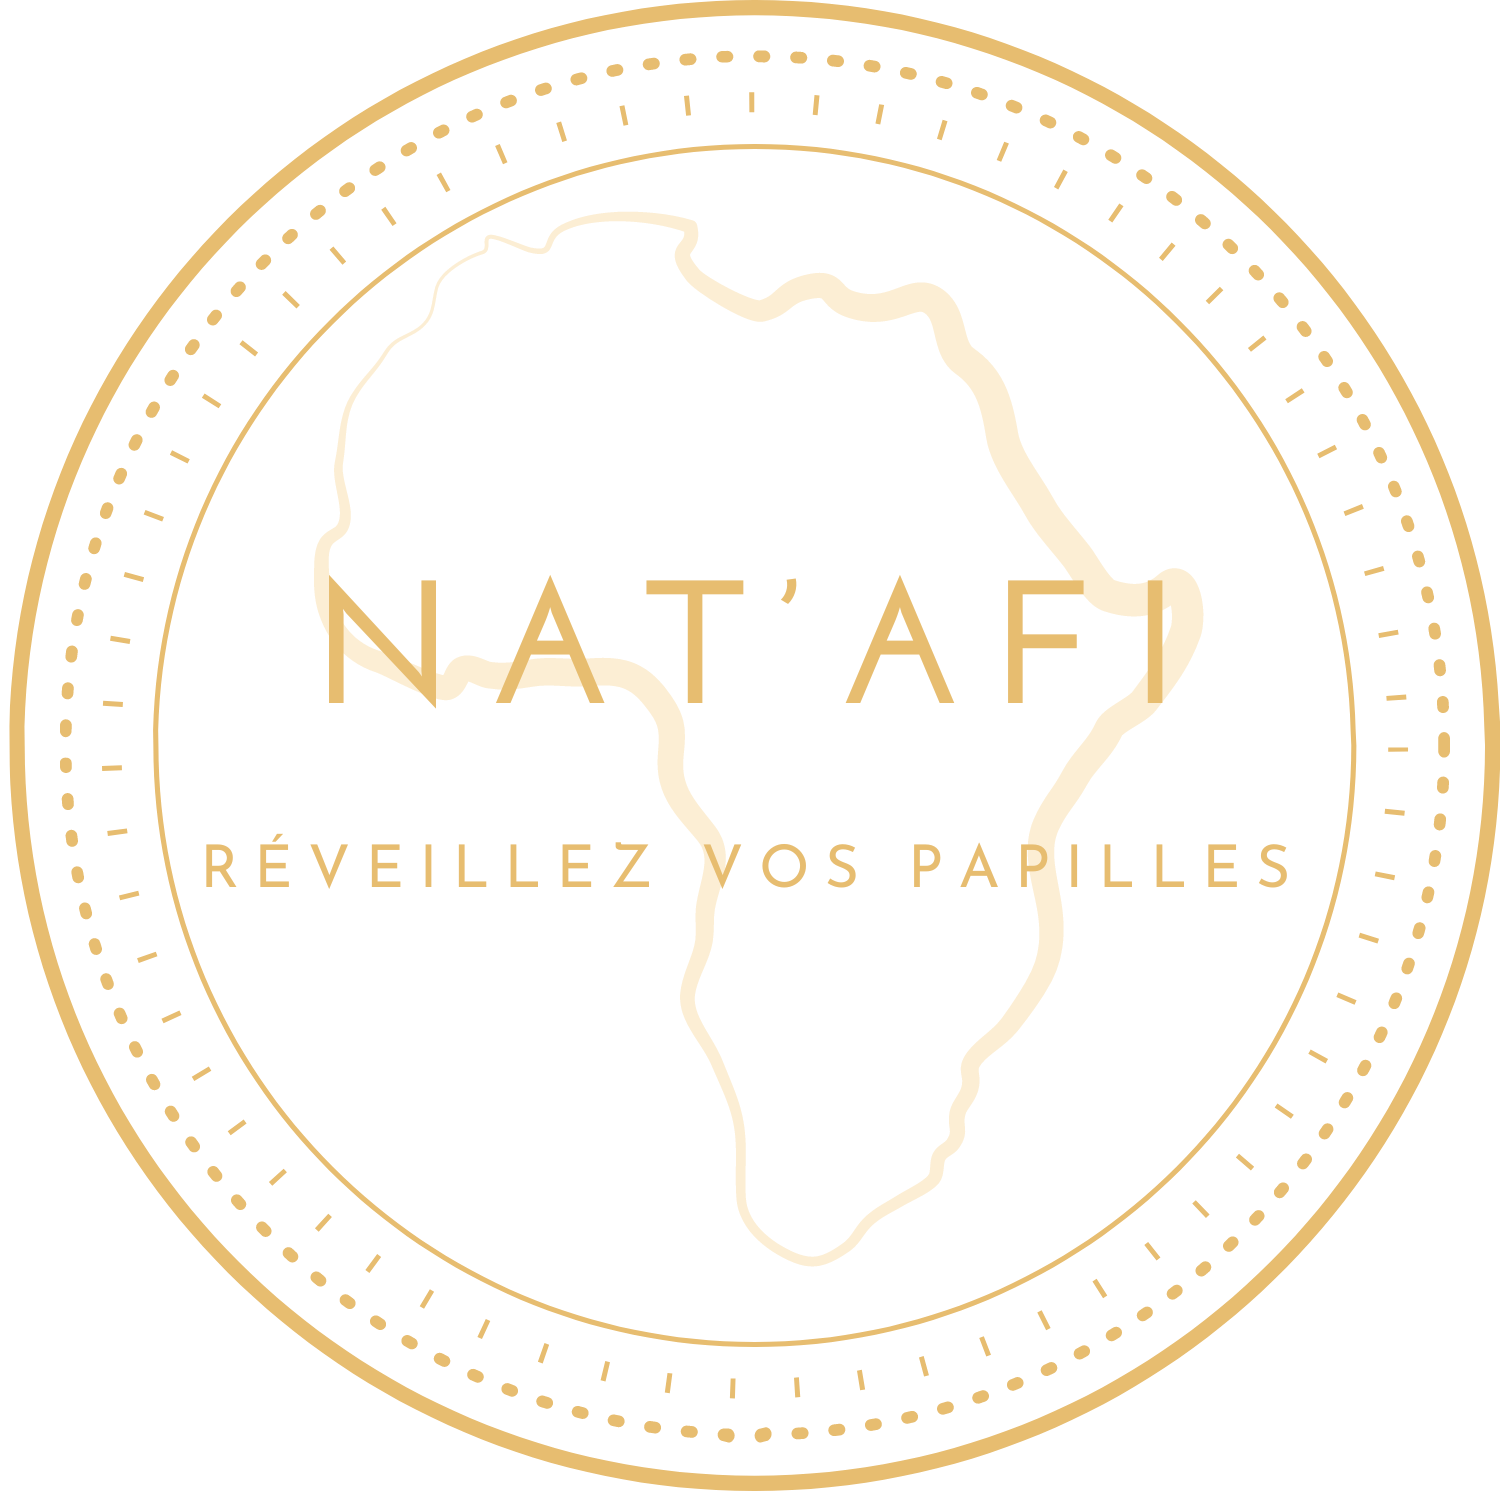 Logo de Natafi en couleur or sur fond blanc. Au centre, le contour stylisé du continent africain avec l'inscription 'NAT'AFI' superposée de manière à ce que les lettres 'N' et 'T' forment les côtes ouest et nord de l'Afrique et 'AFI' se situe au niveau de l'Afrique de l'Est. Un cercle orné de deux anneaux de motifs de points et de traits entoure l'Afrique. Le slogan 'RÉVEILLEZ VOS PAPILLES' est inscrit en majuscules à la base du cercle.